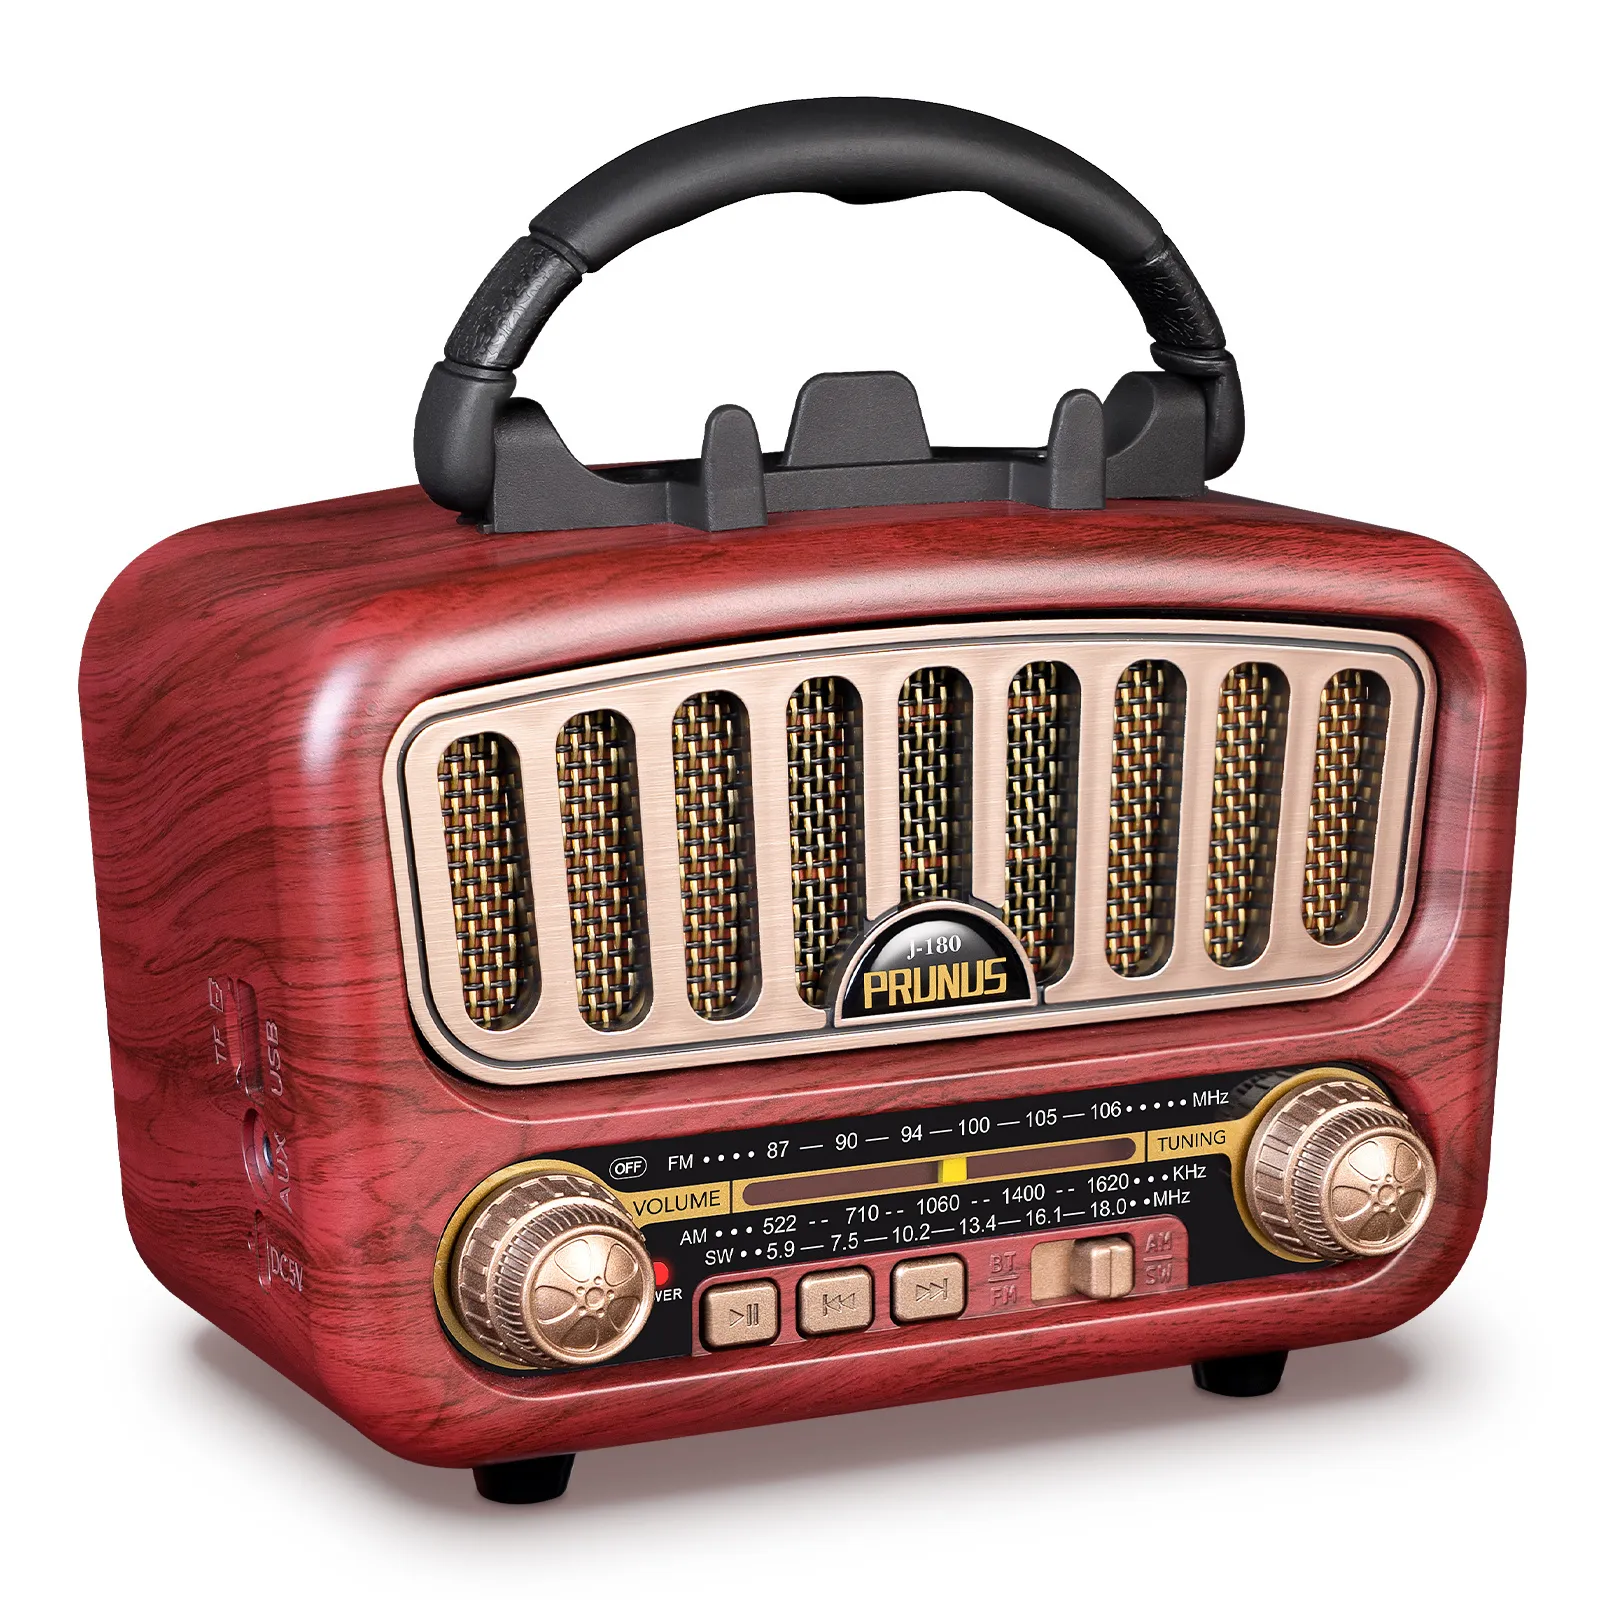 Radio Retro Parlante Mini Inalámbrico Portátil Con Mascota